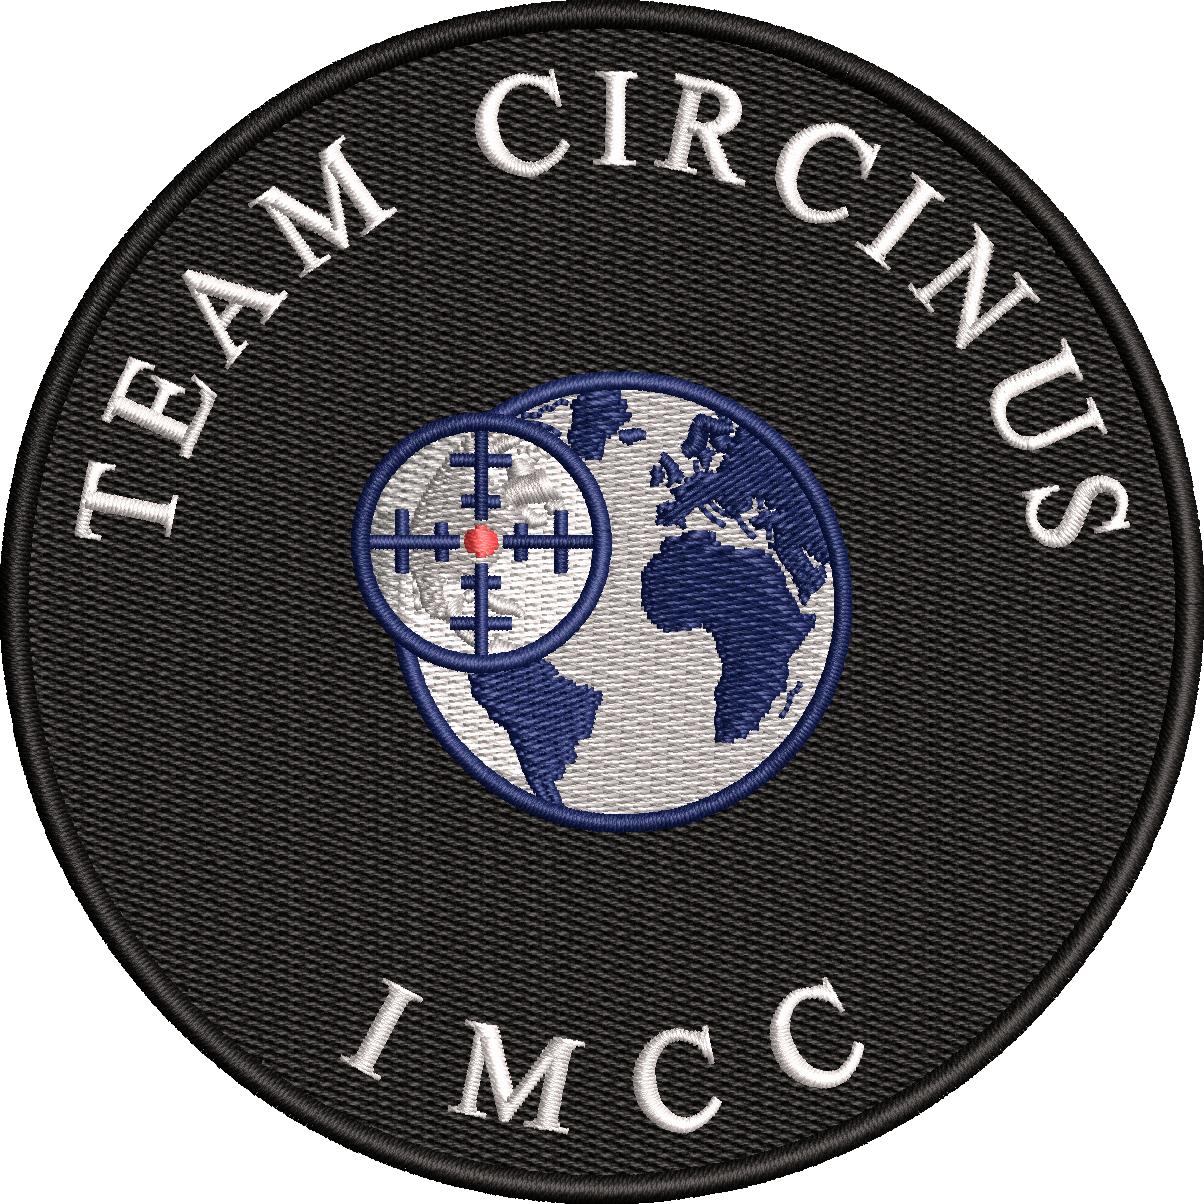 Team Circinus - IMCC